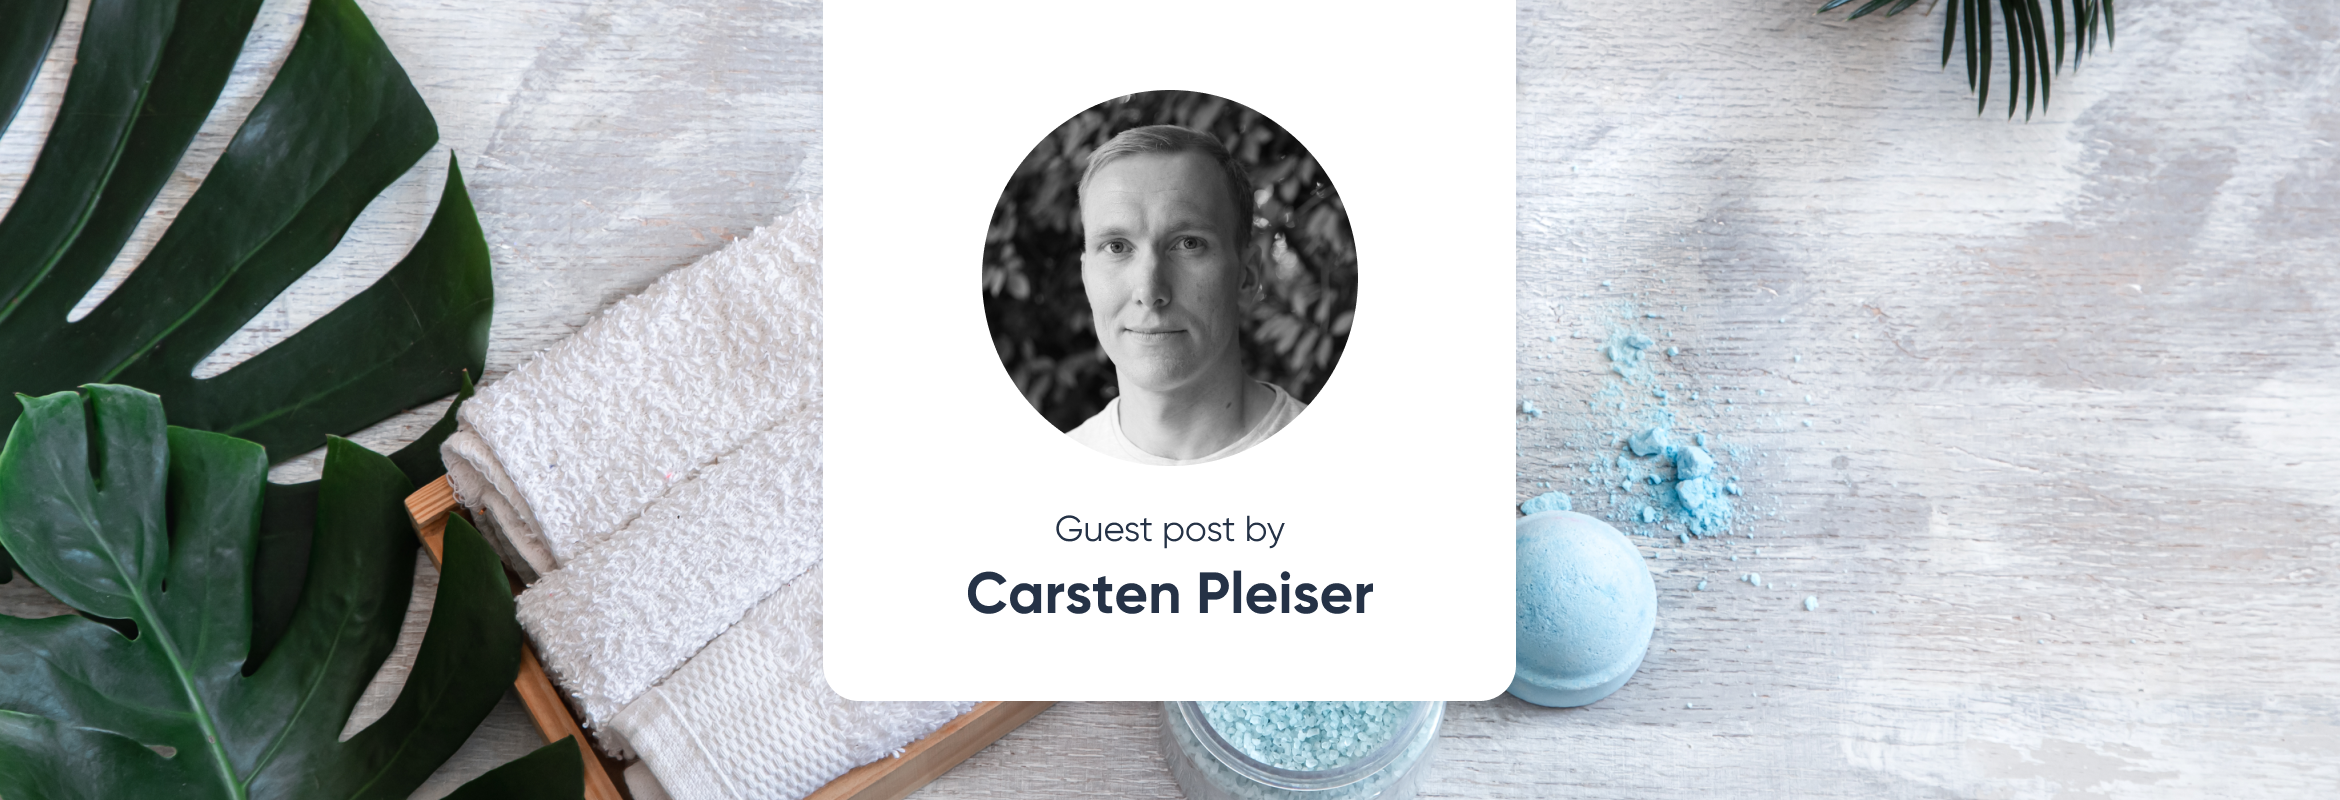 paperless with Carsten Pleiser